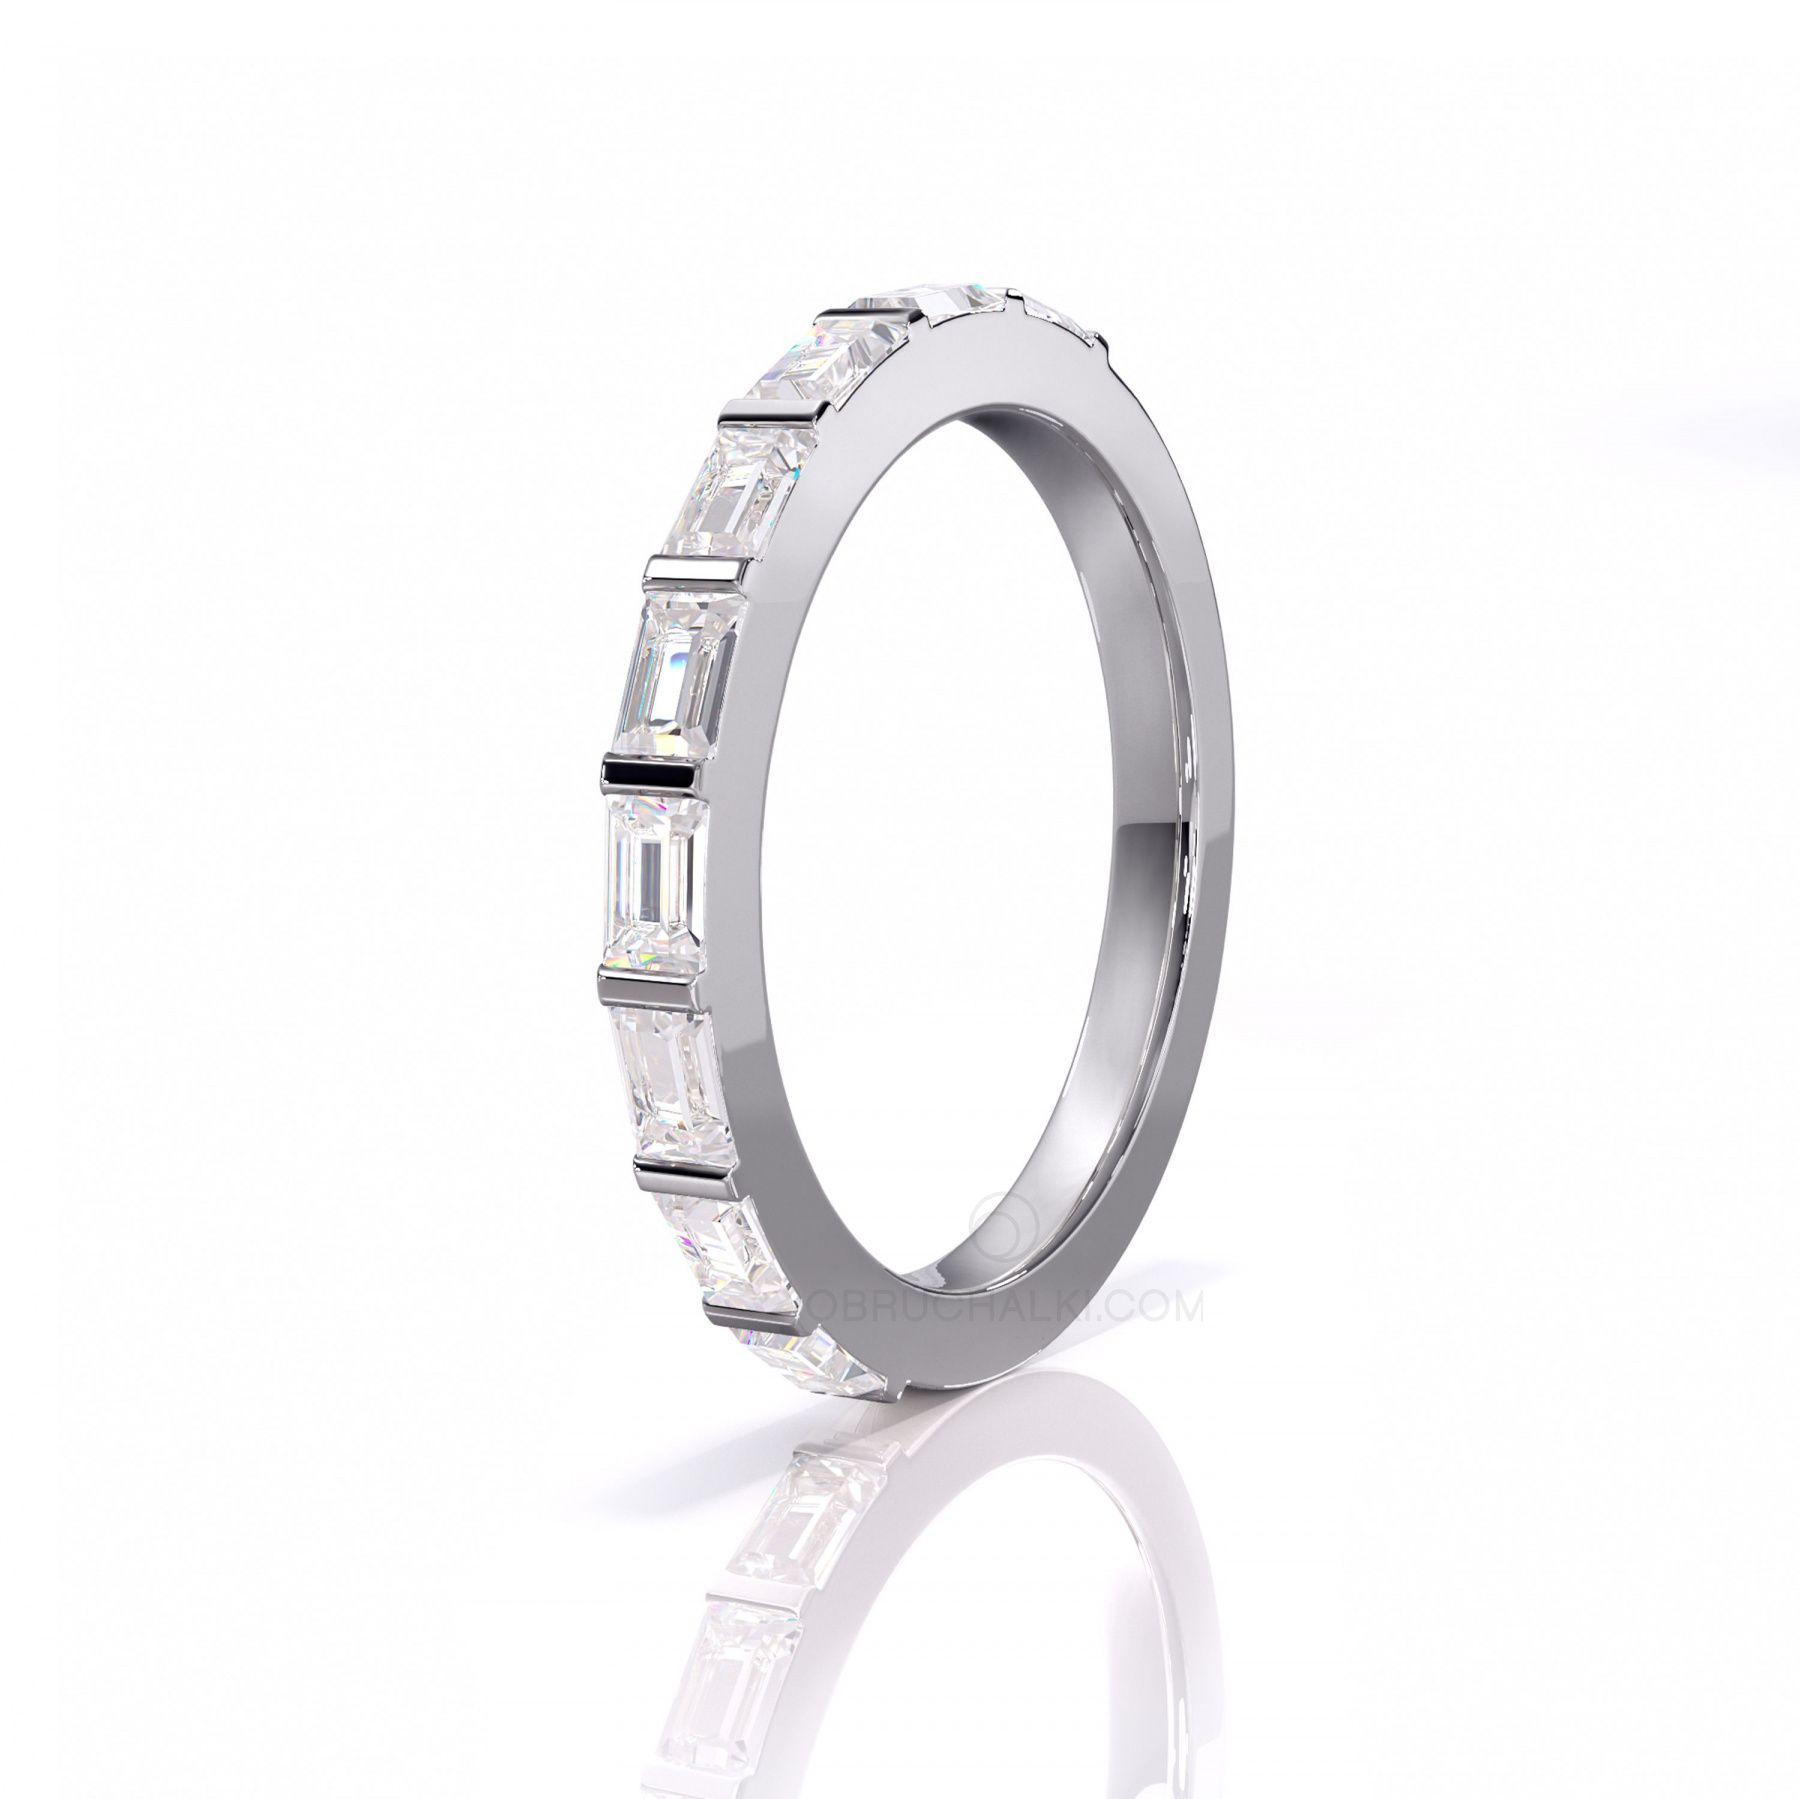 Купить Обручальное кольцо дорожка из белого золота с бриллиантами прямоугольной огранки багет BAGUETTE SHINY CIRCLE в интернет-магазине: эксклюзивный дизайн, цена, отзывы, описание